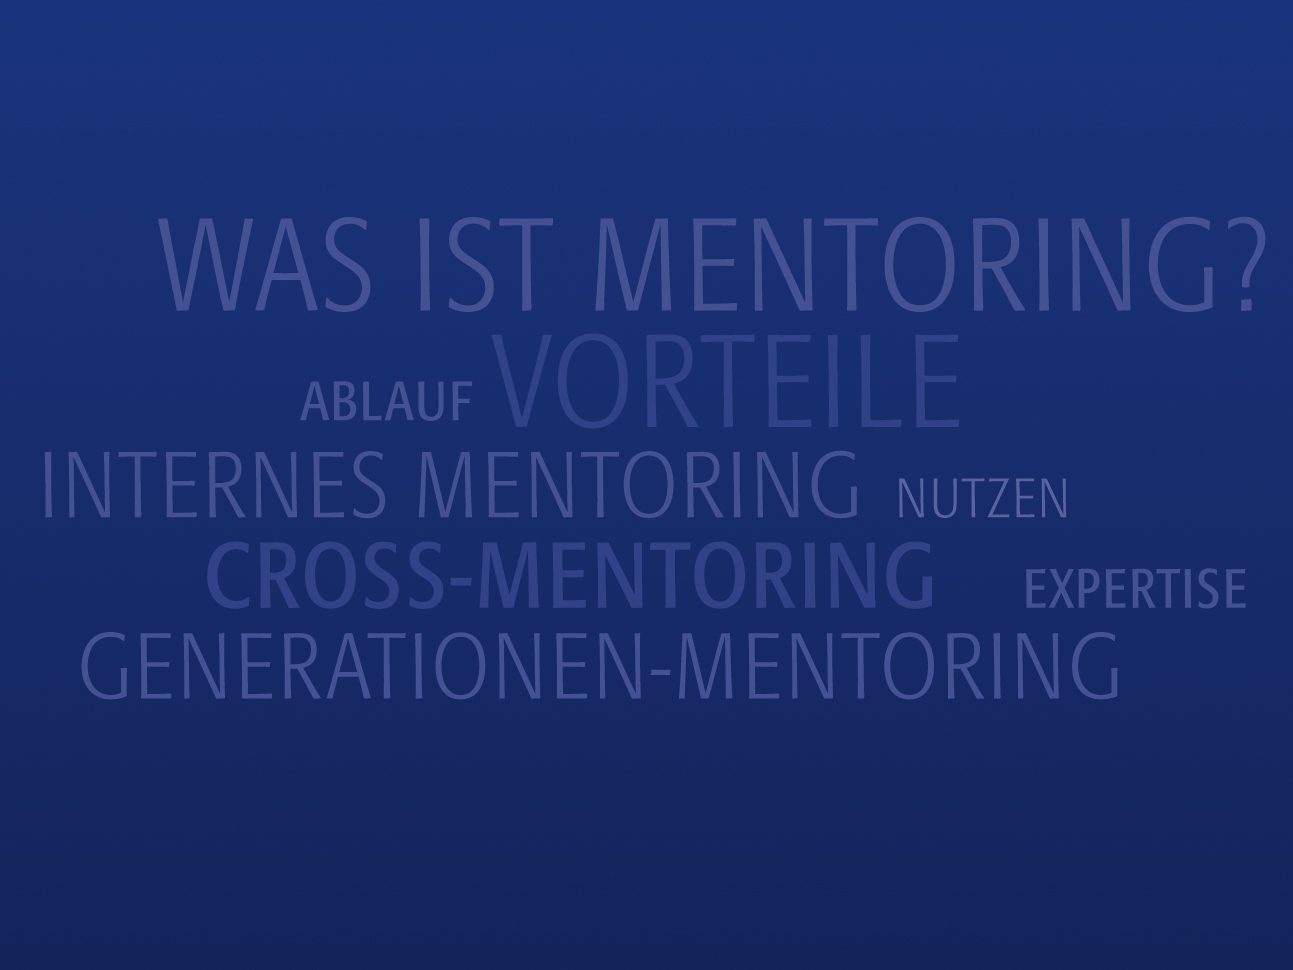 martin_zech_design_corporate_design_kontor5_mentoring_cloud